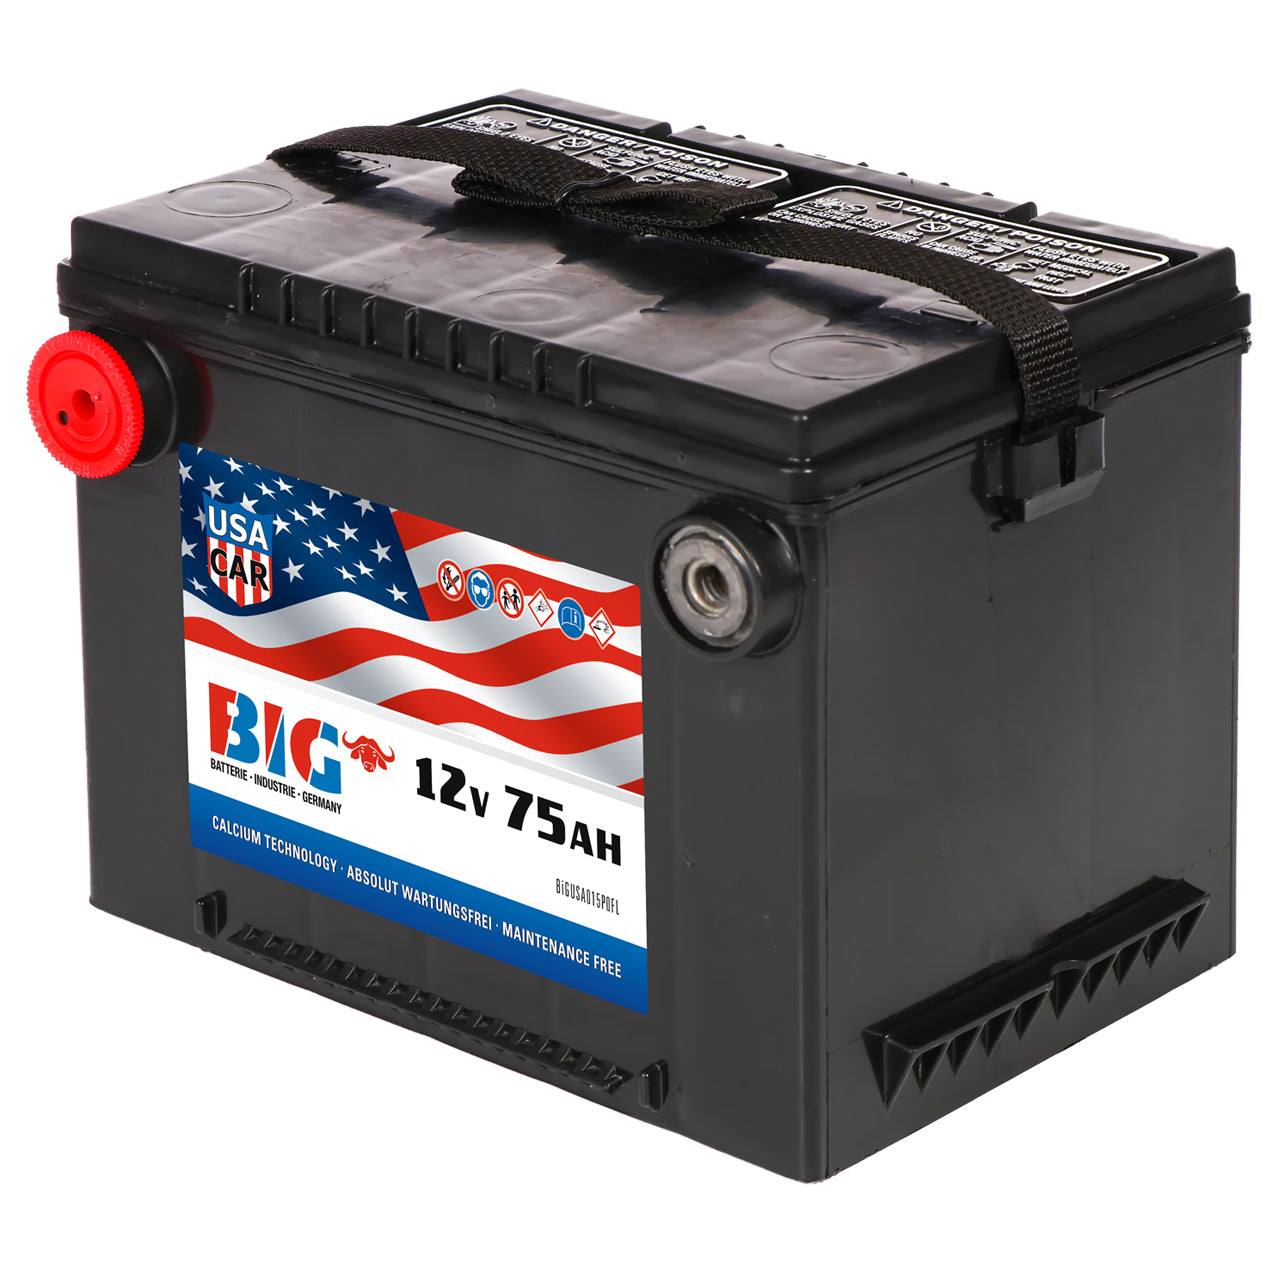 BIG US Autobatterie 12V 75Ah DIN 57575